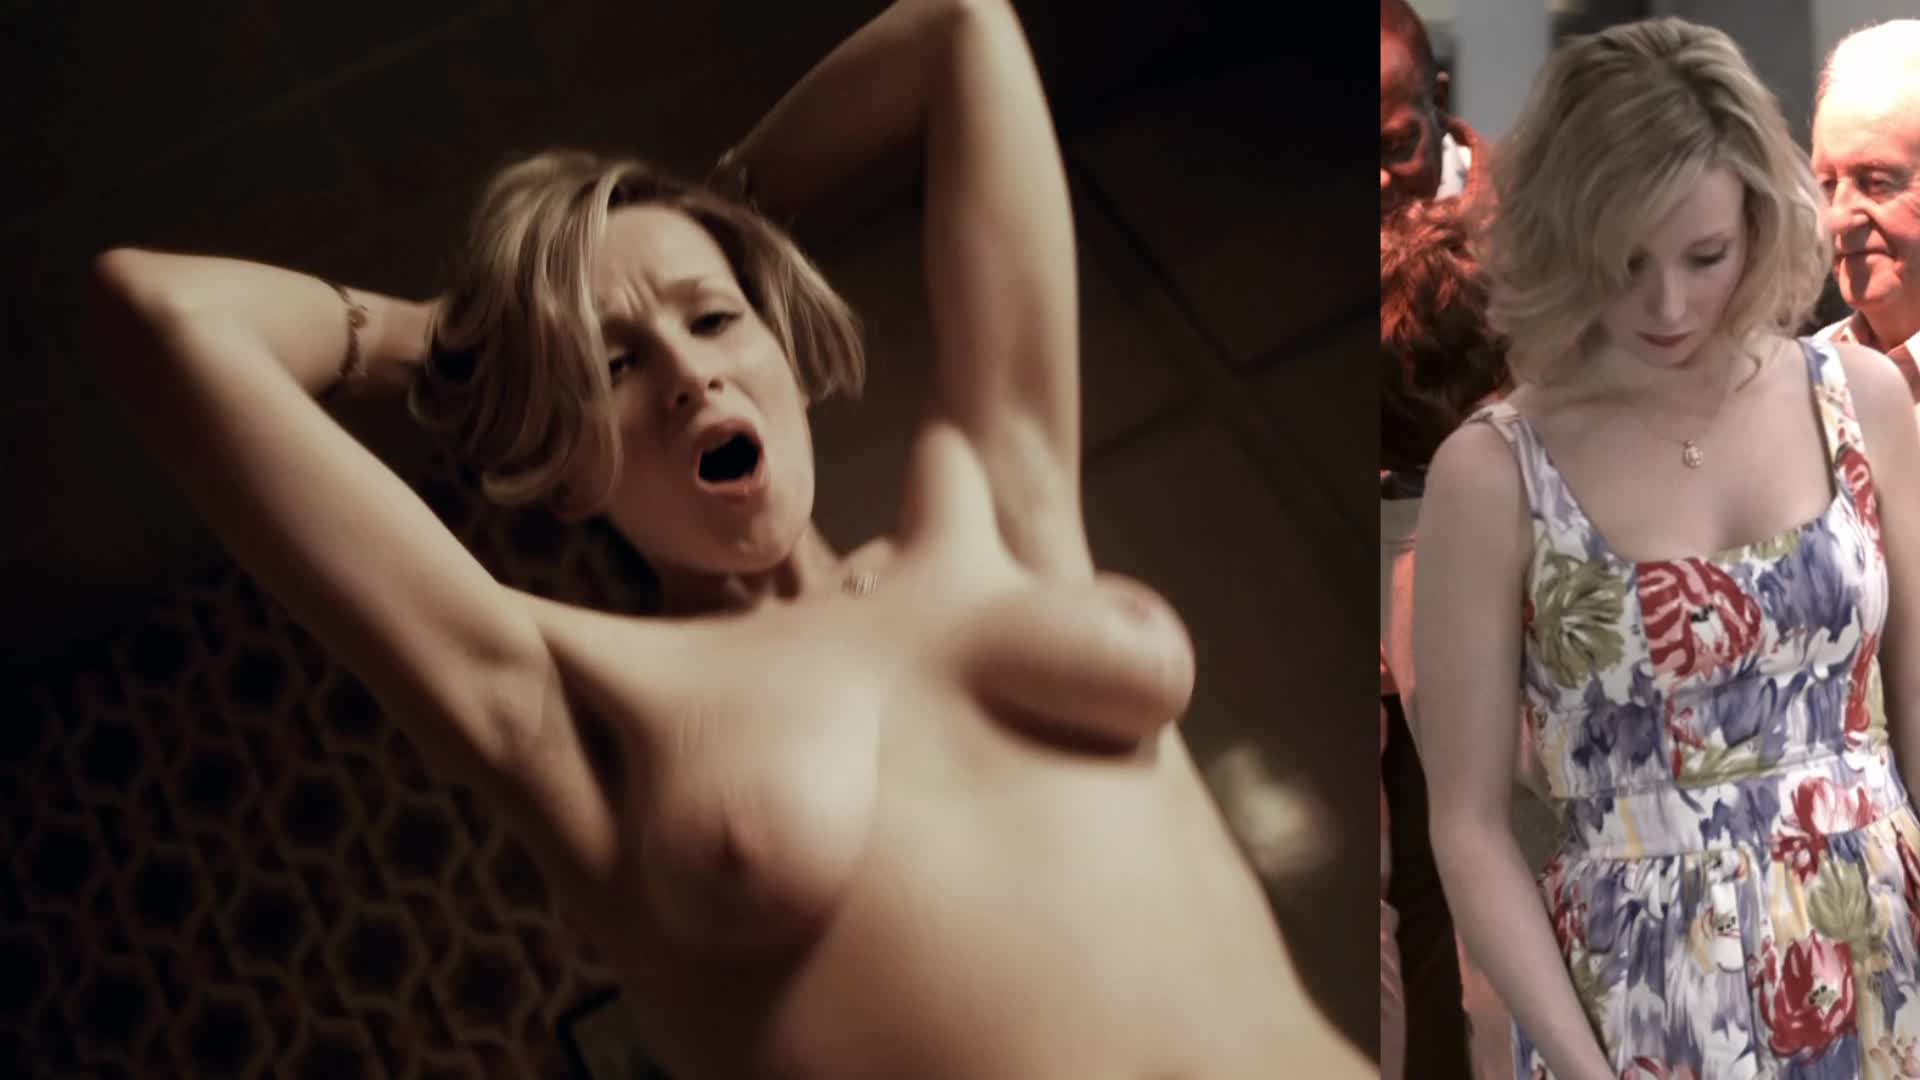 Amy beth nude